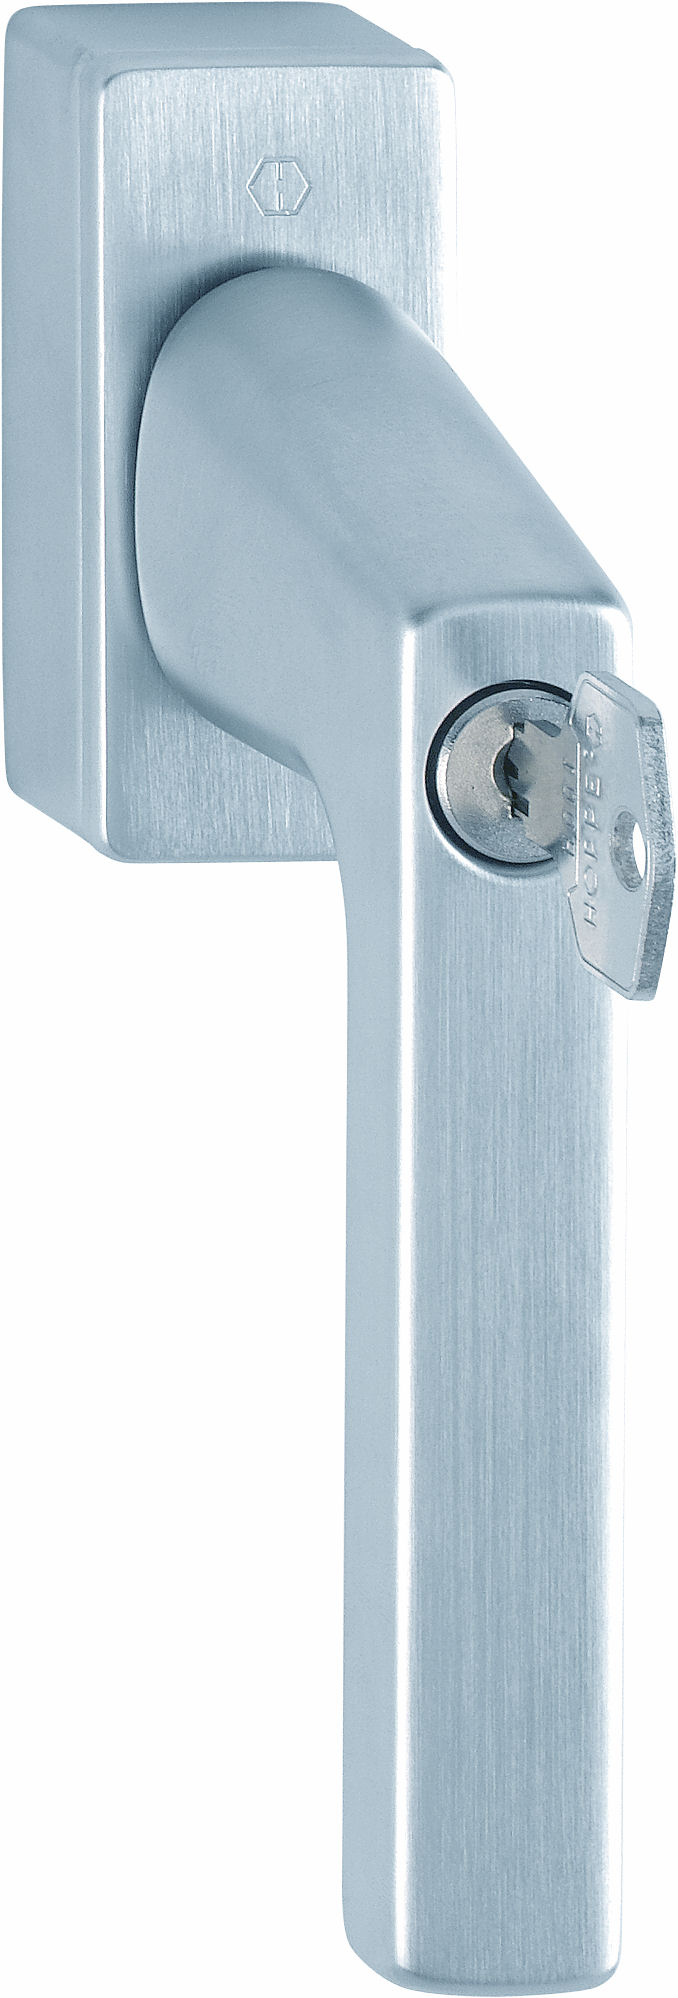 Martellina dk con chiave HOPPE modello DALLAS per serramento con rosetta con quadro variabile in ottone cromo satinato